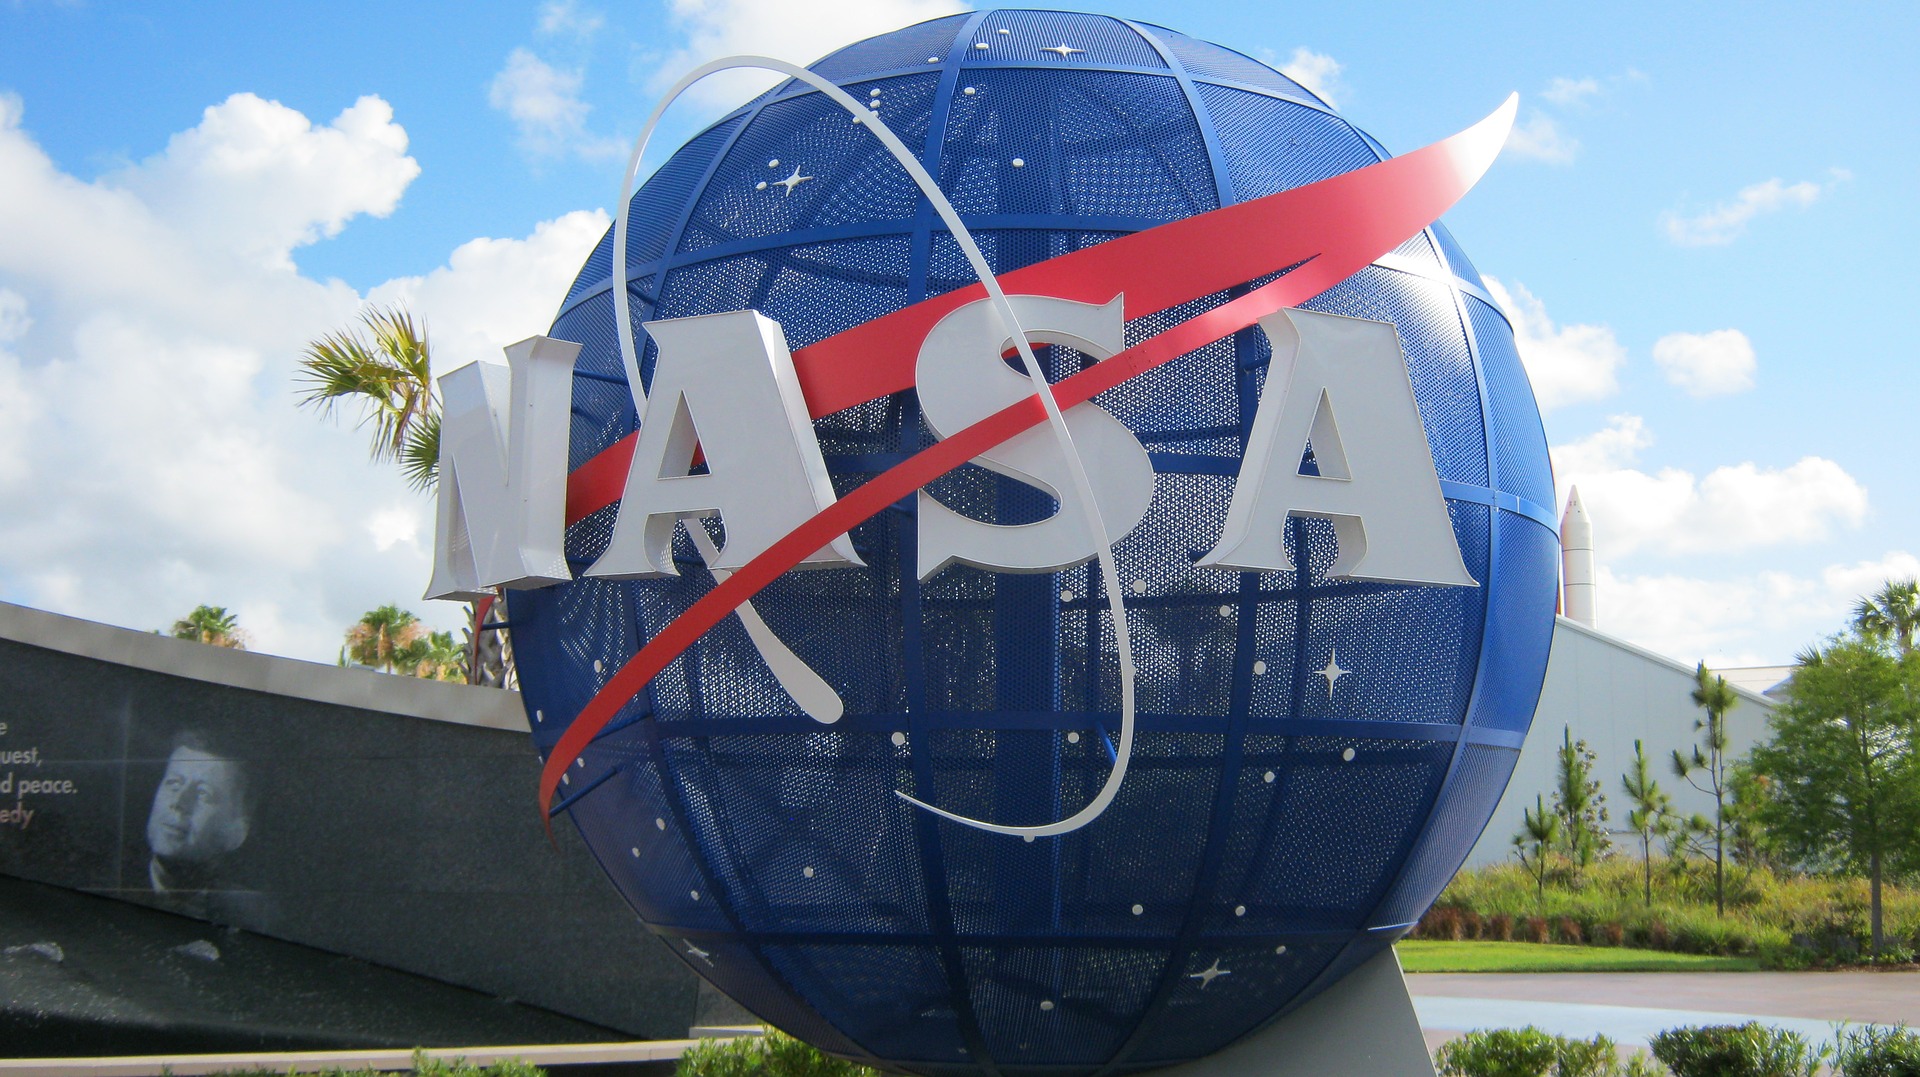 La nave espacial robot Lucy de la NASA está programada para ser lanzada en octubre de 2021. (Foto Prensa Libre: Pixabay)